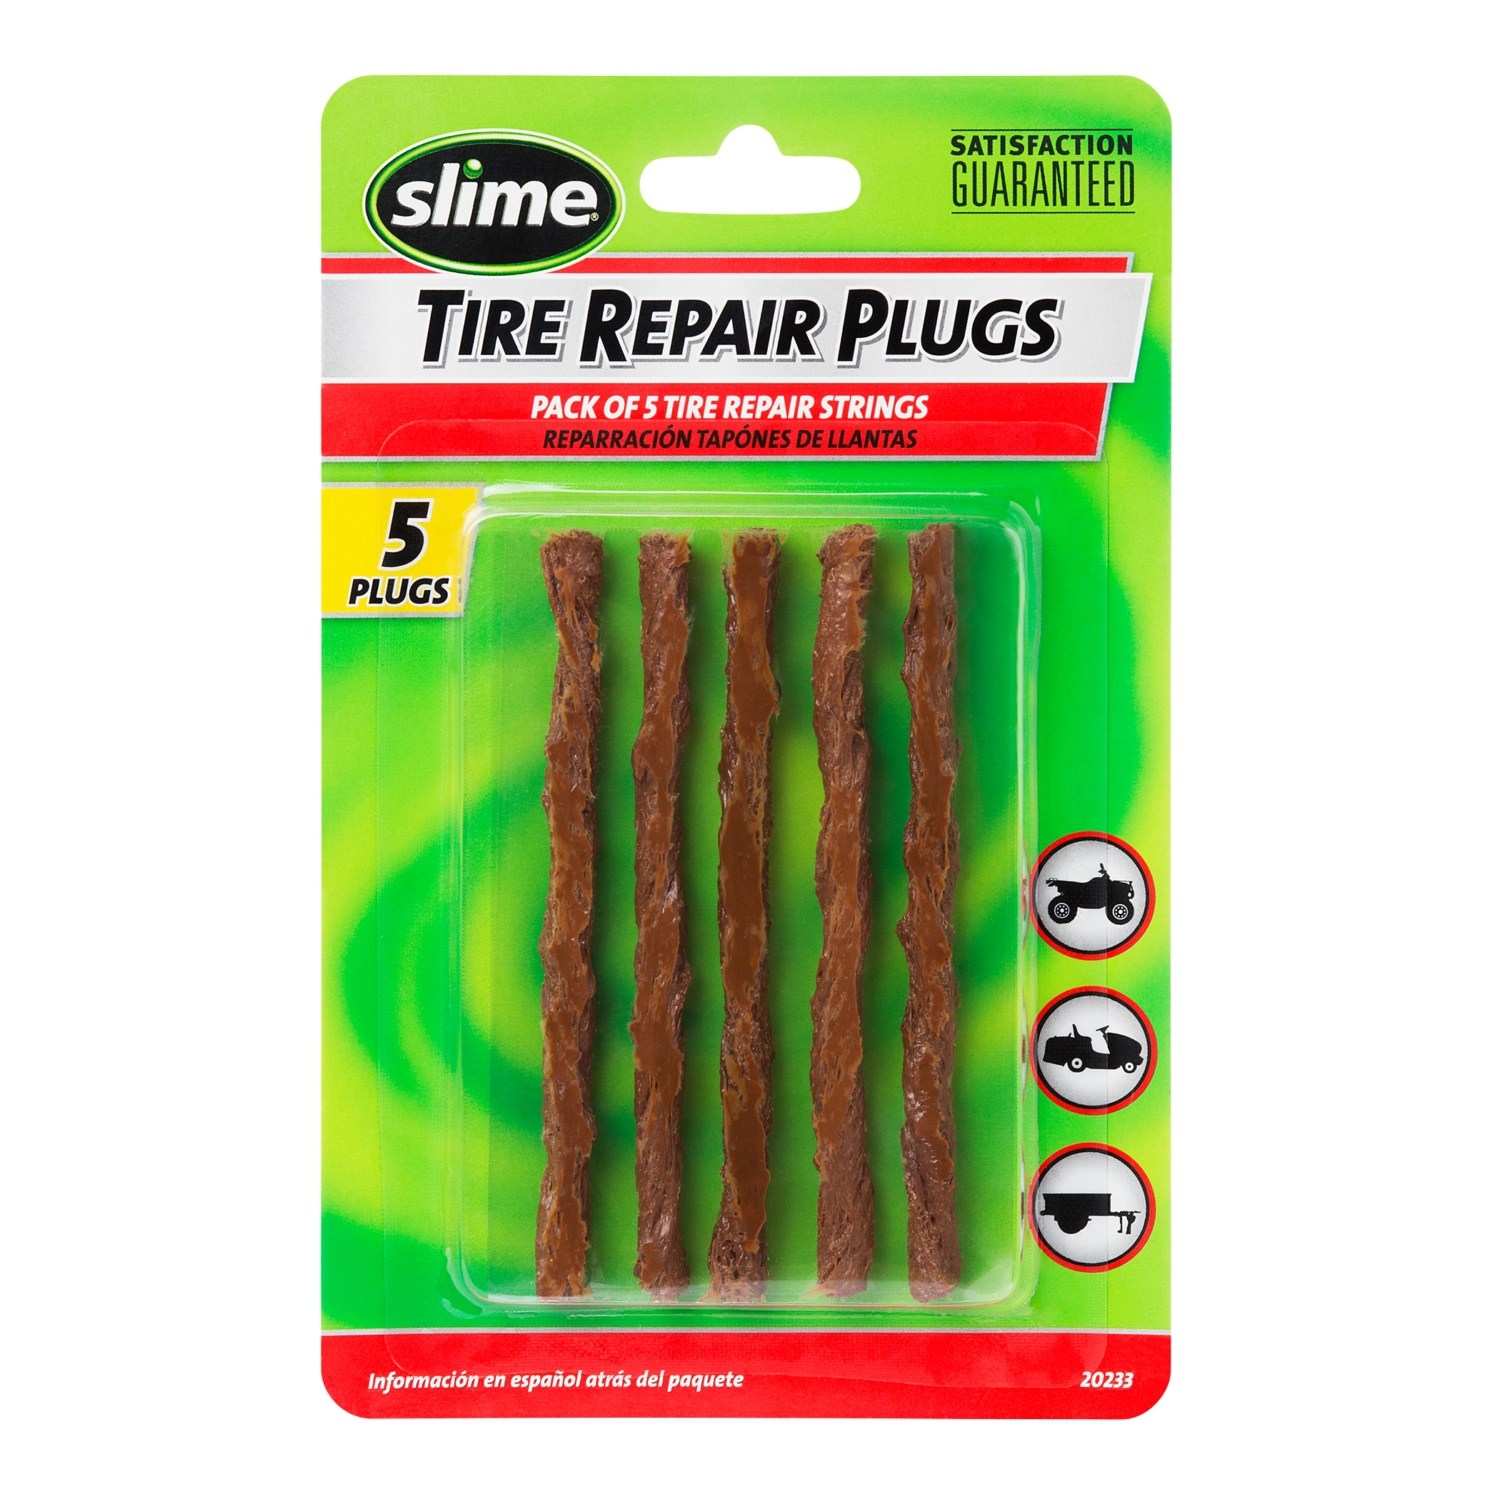 slime tire repair